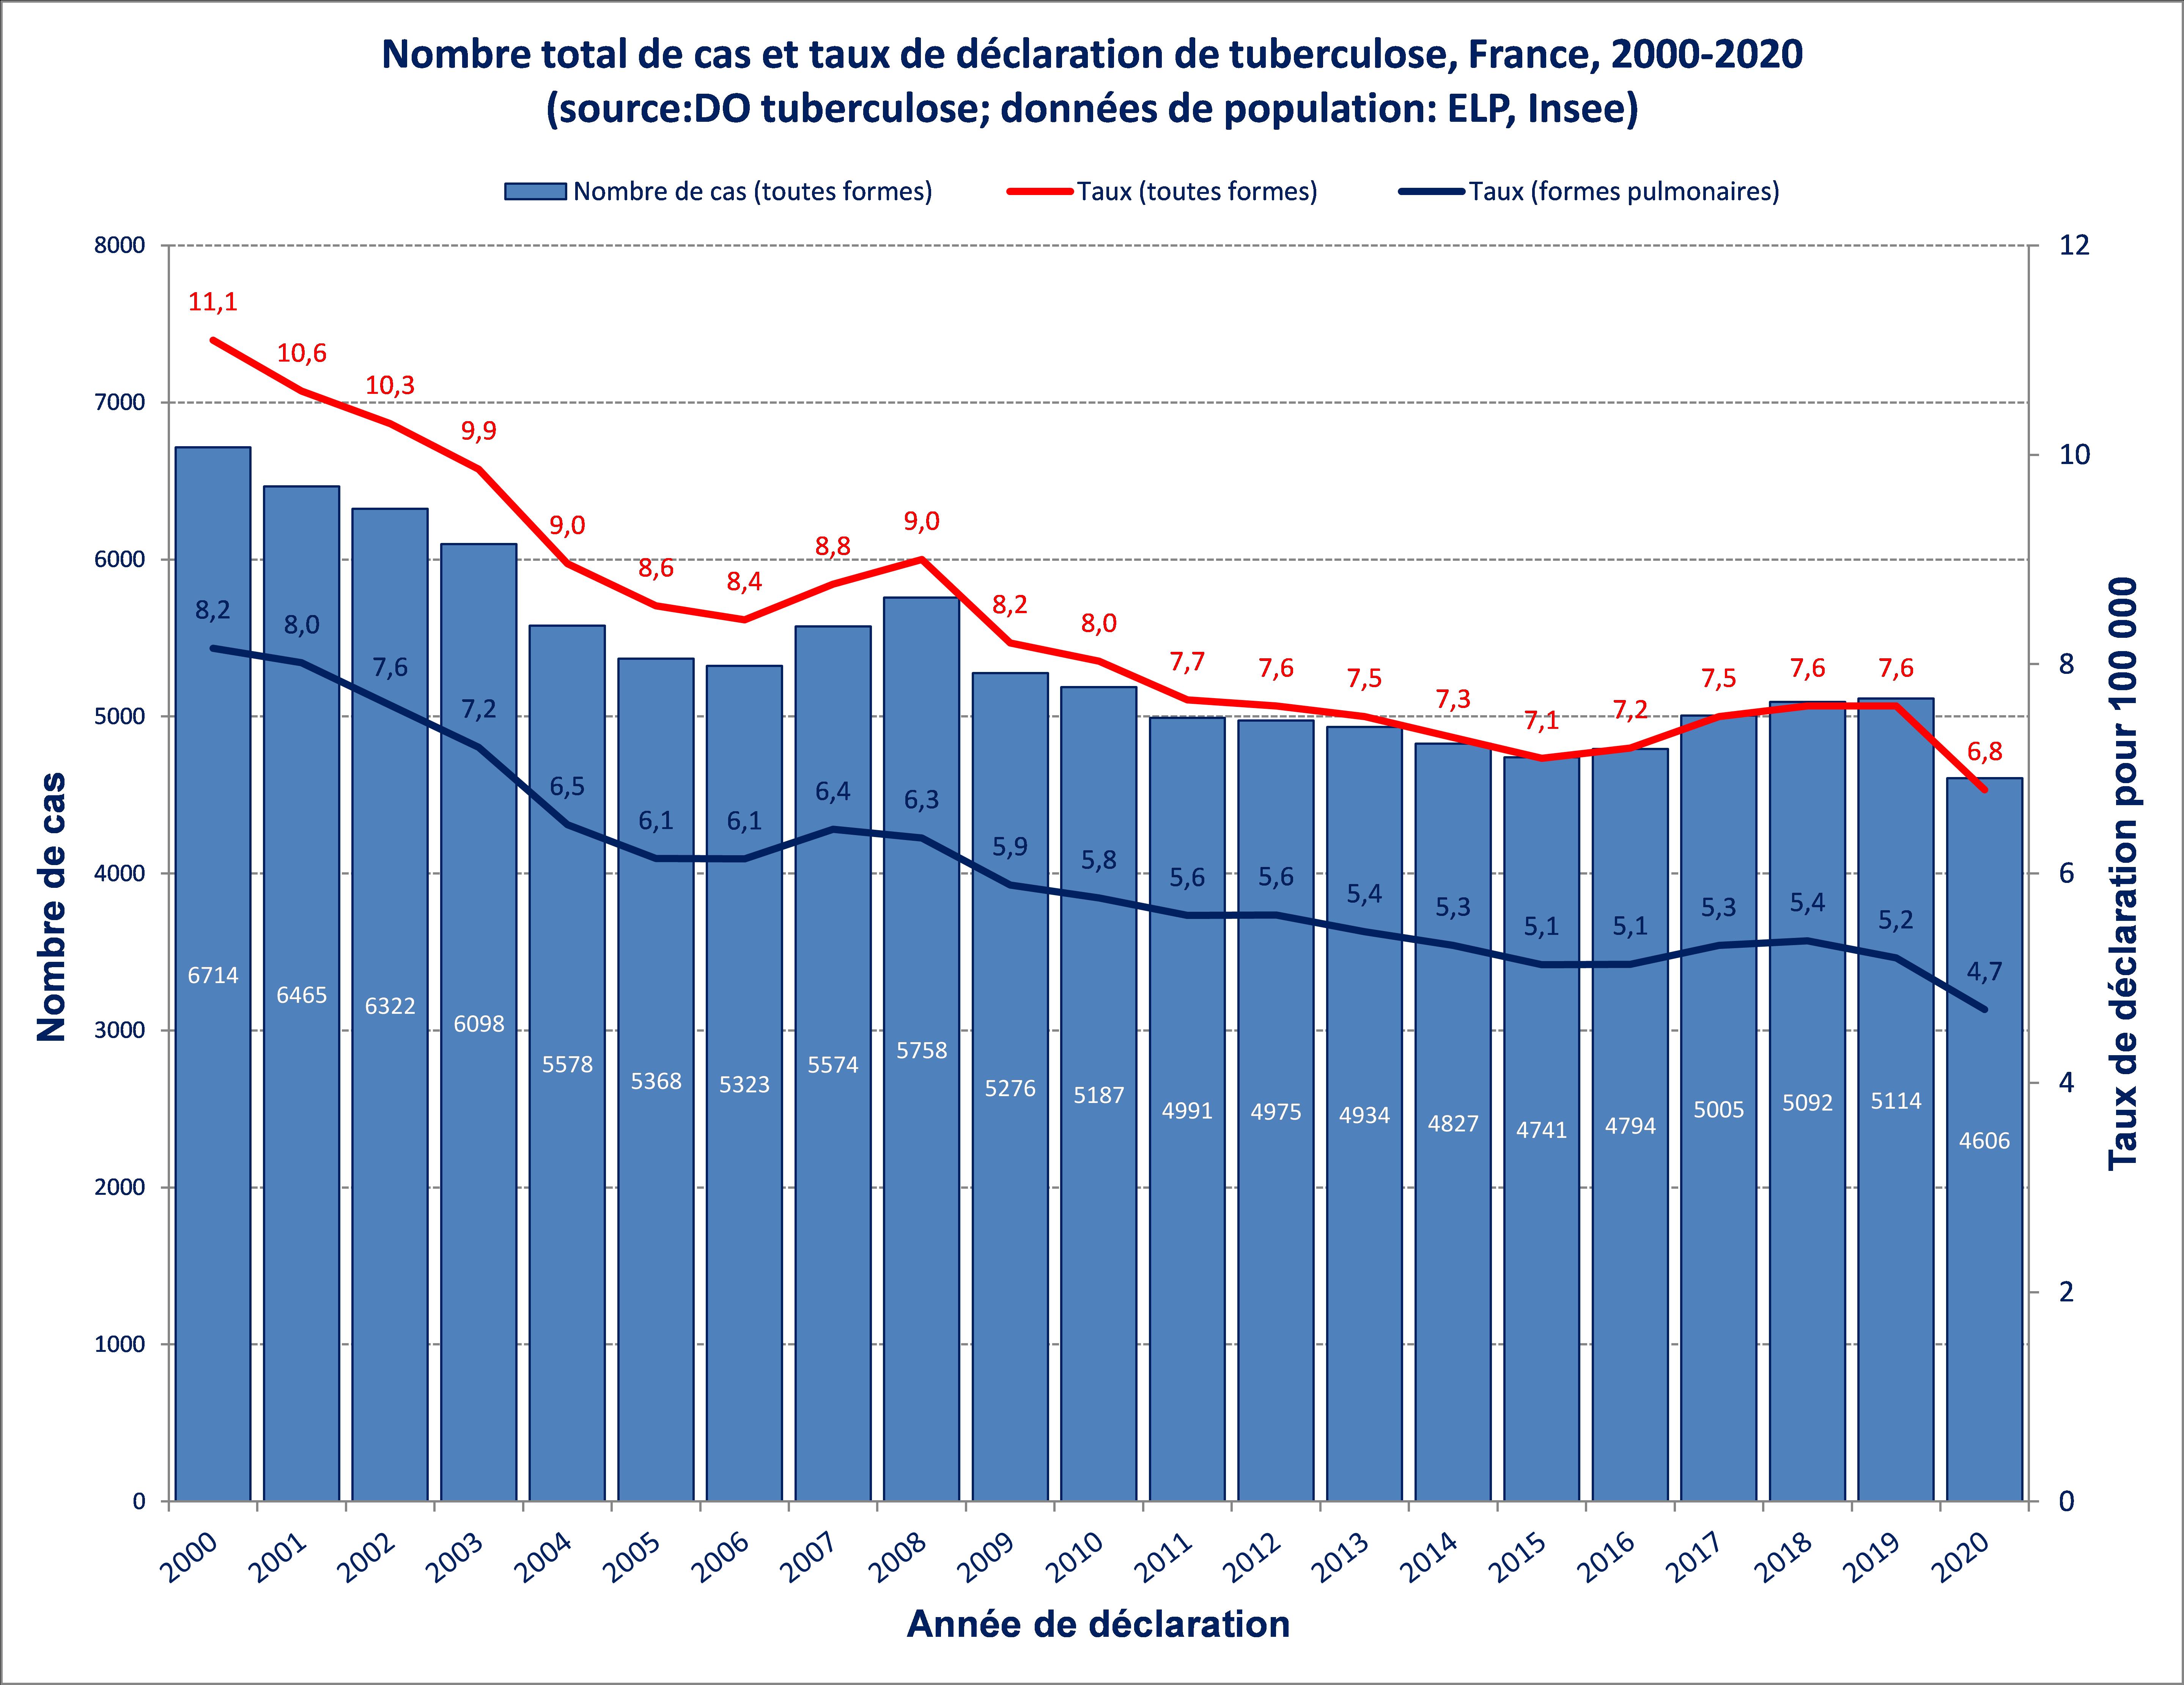 Nombre total de cas et taux de déclaration (pour 100 000 habitants) de tuberculose, France entière 2000-2020